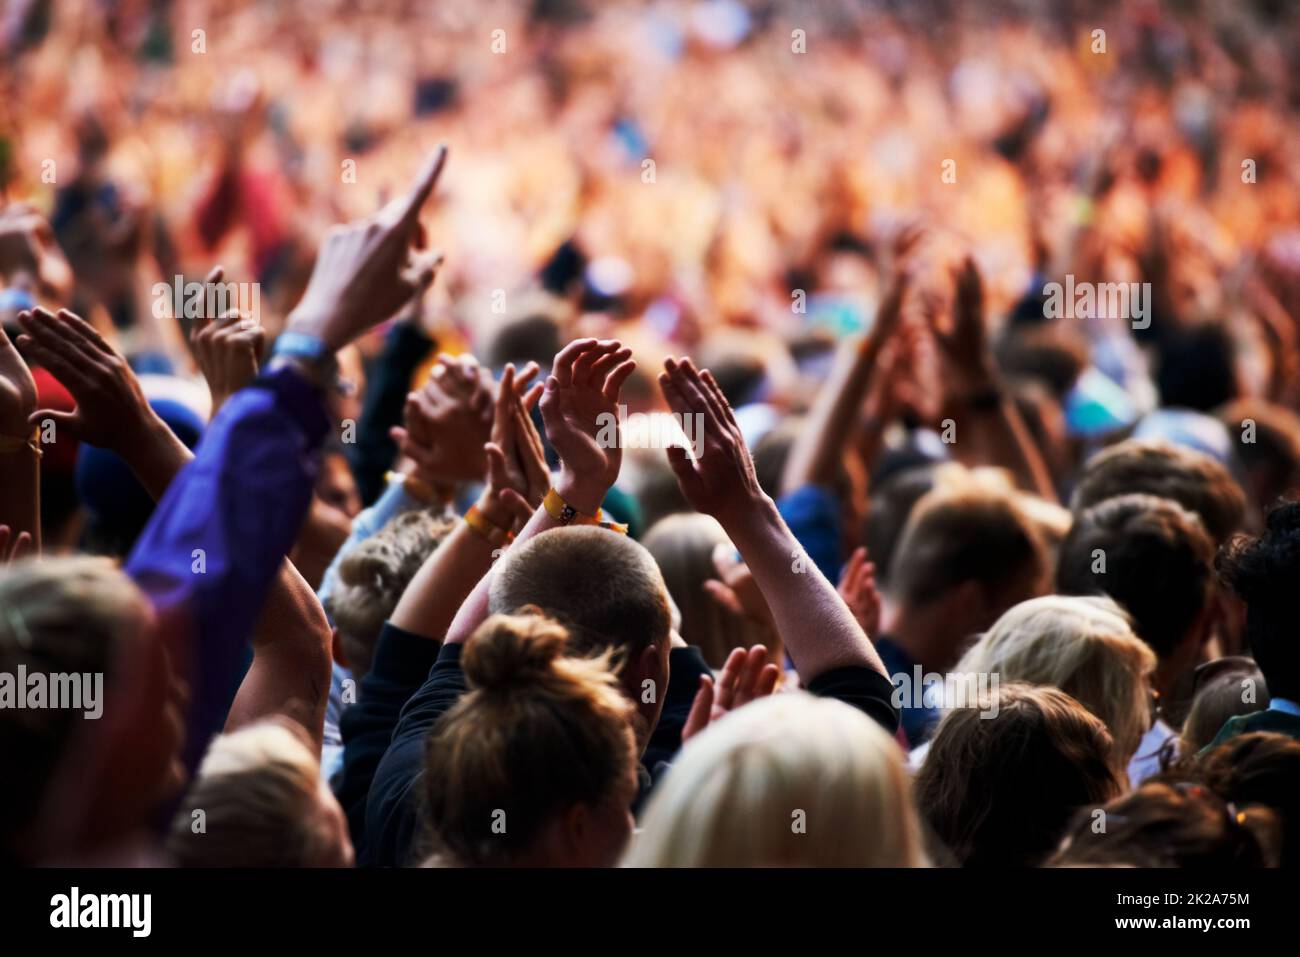 Les foules apprécient l'atmosphère. Photo d'une foule de jeunes lors d'un festival de musique en plein air. Banque D'Images